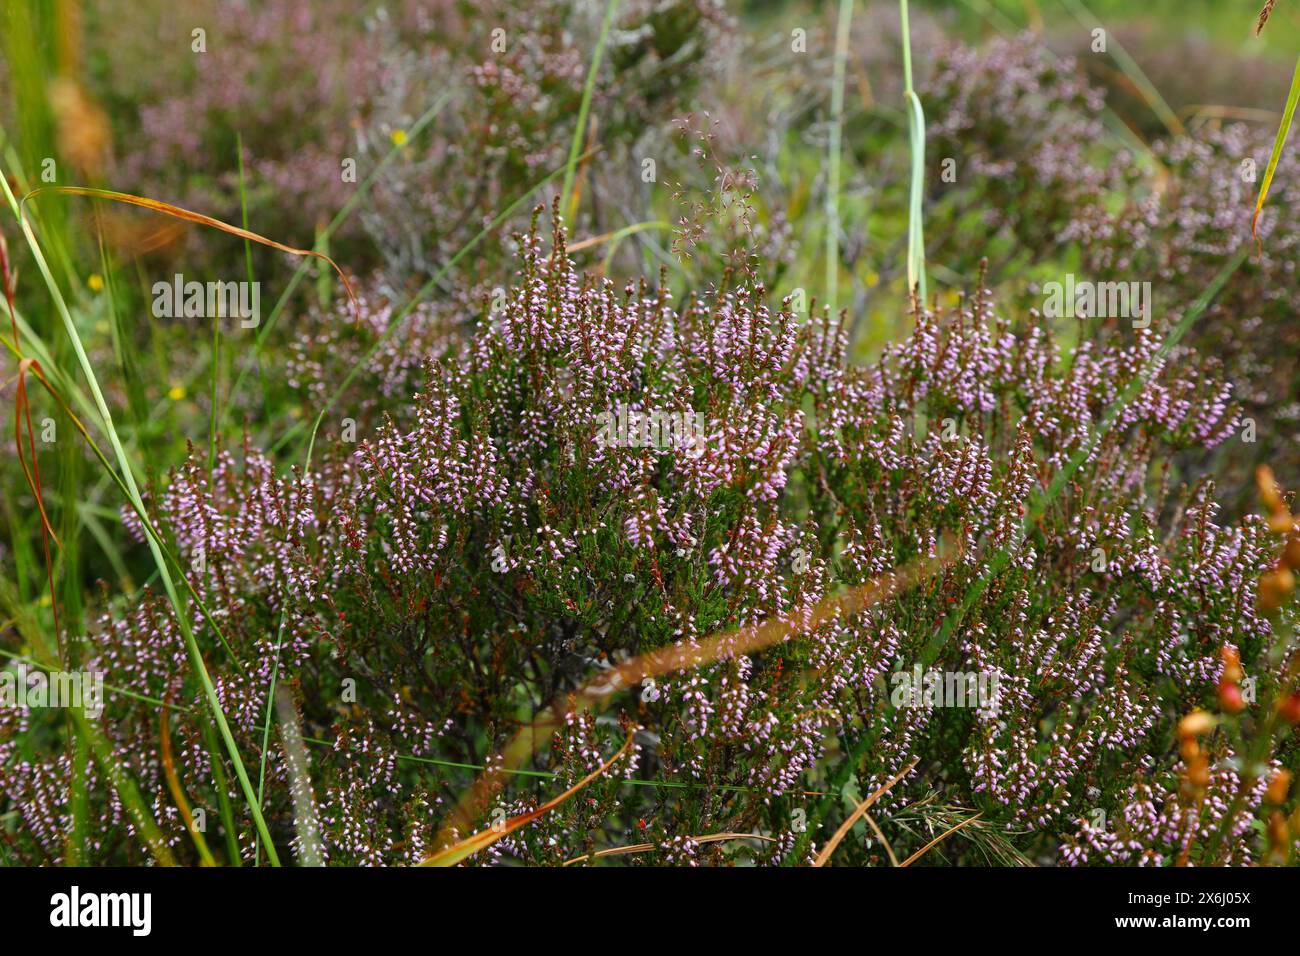 Natura della Norvegia. Stabilimento di Heather (noto anche come Ling, Calluna vulgaris in latino). Specie vegetali indurite a freddo in Scandinavia. Foto Stock